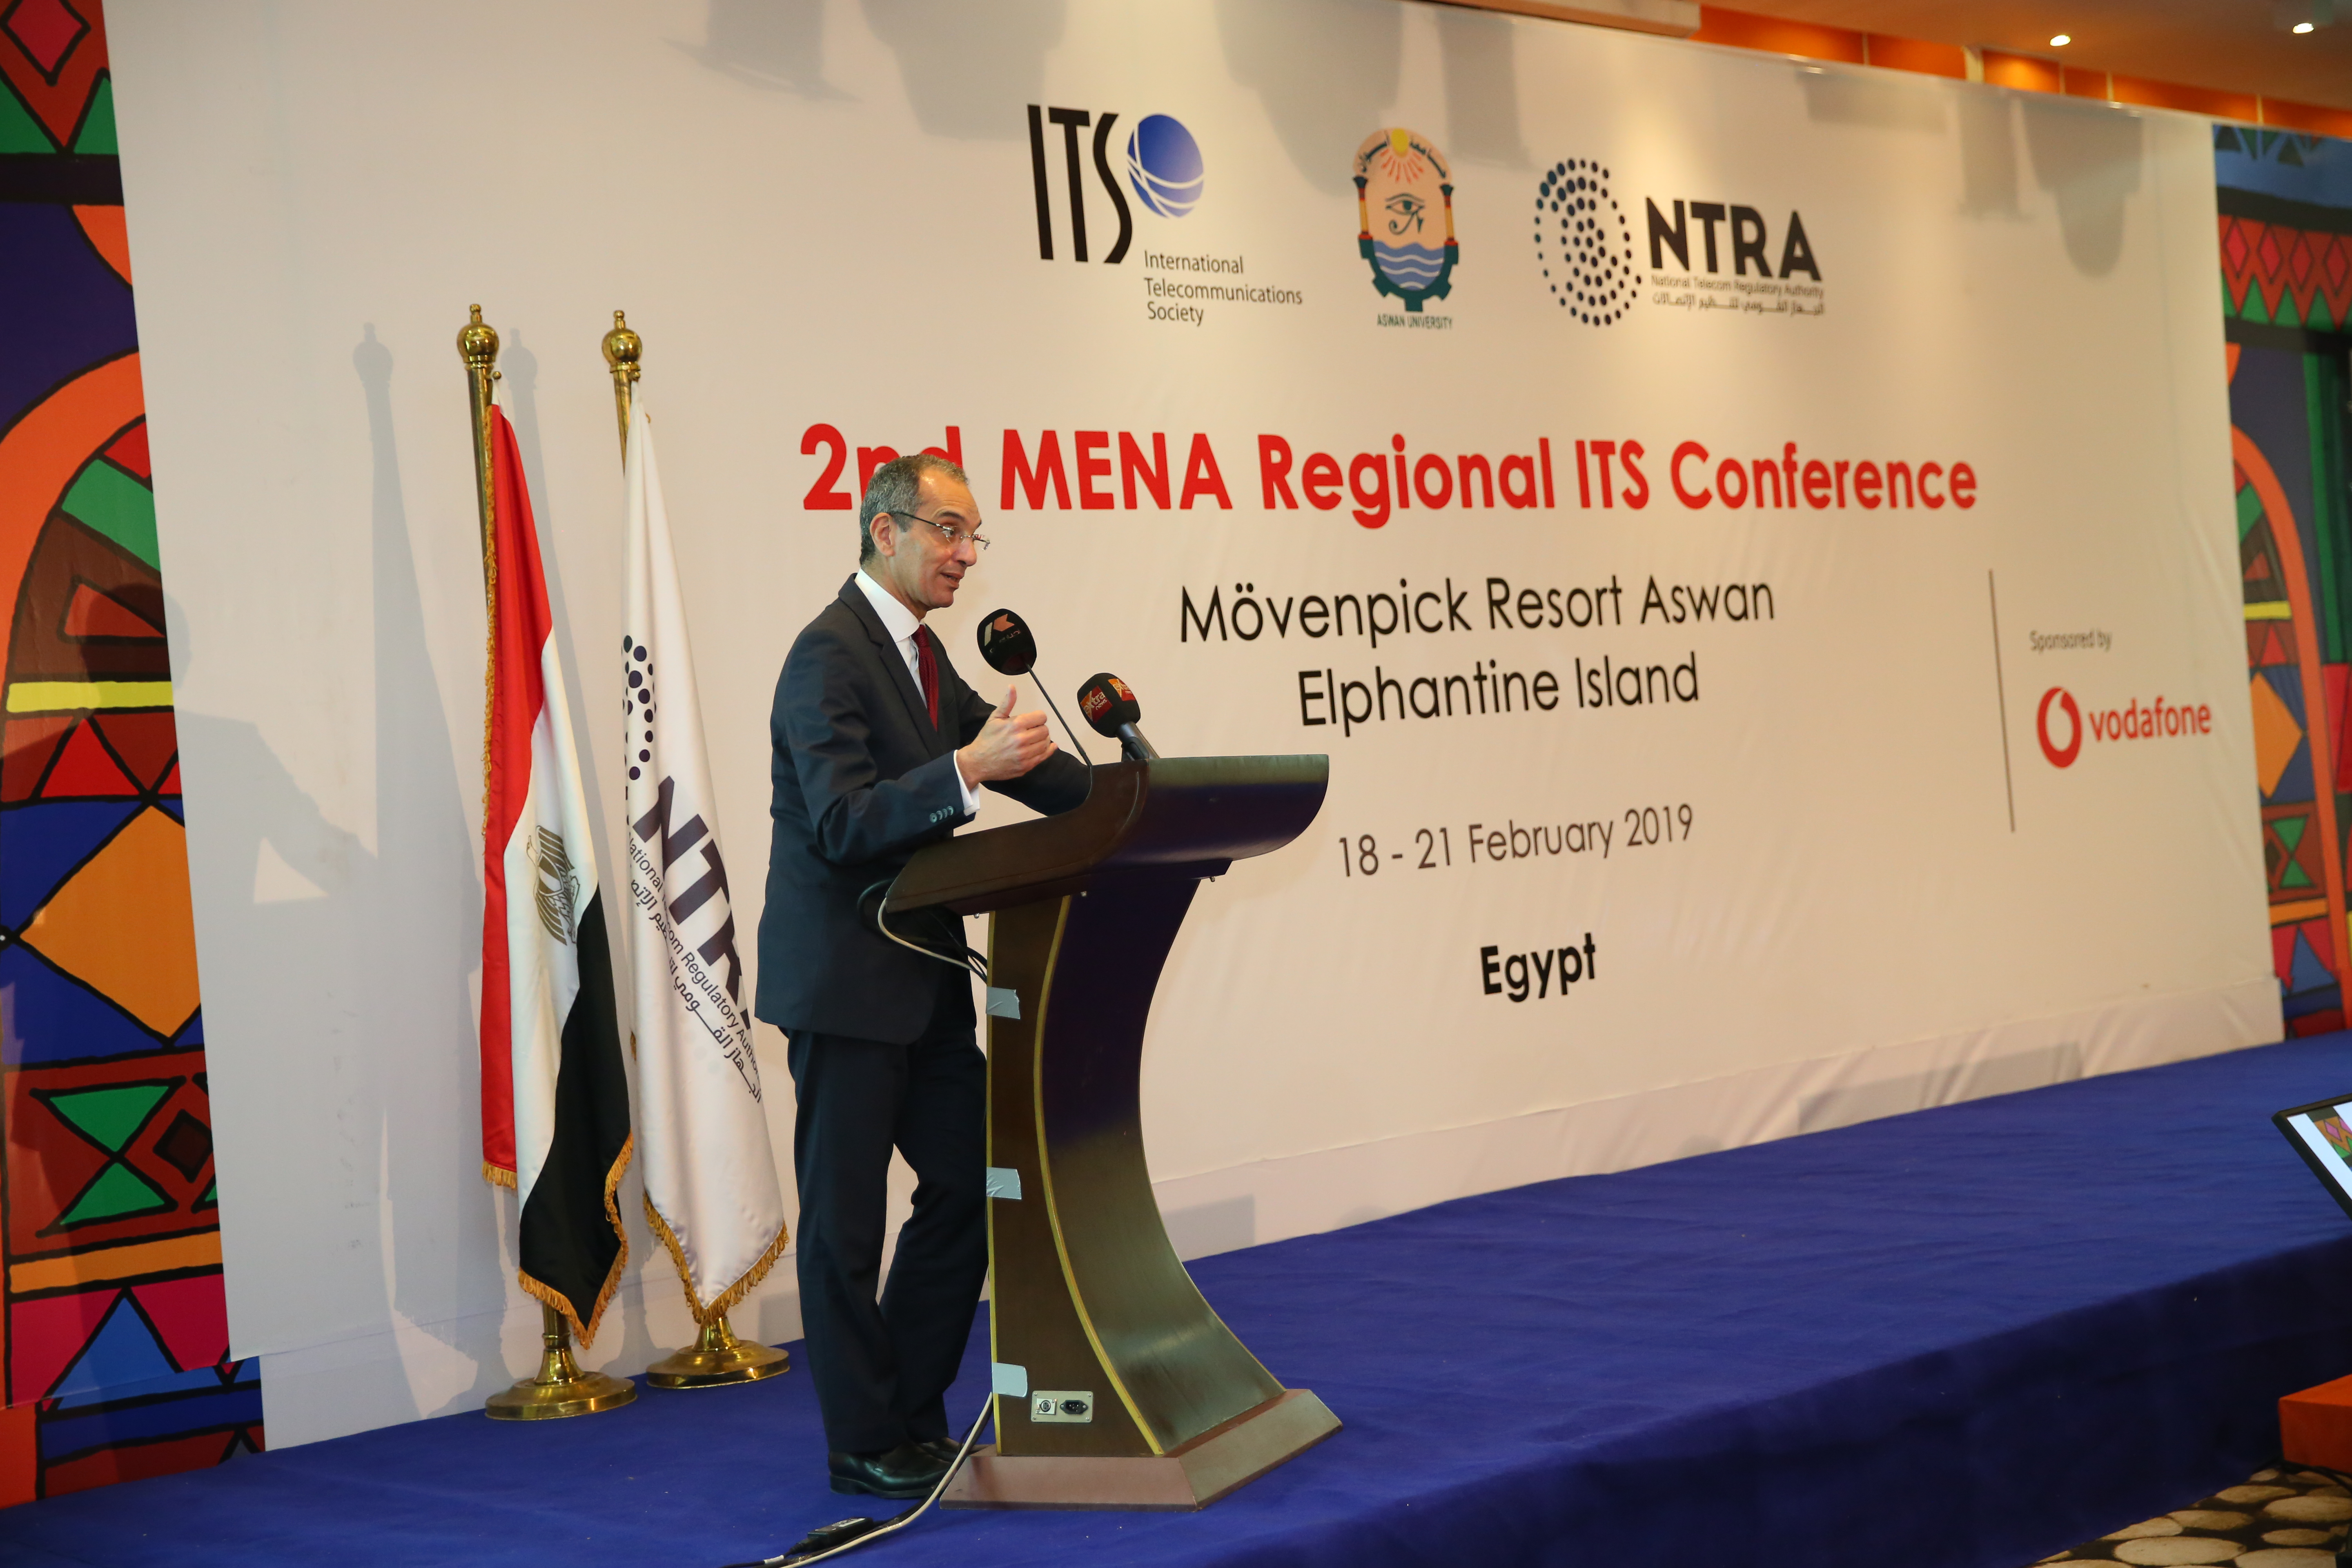 الدكتور عمرو طلعت وزير الاتصالات وتكنولوجيا المعلومات يلقي كلمته بالمؤتمر